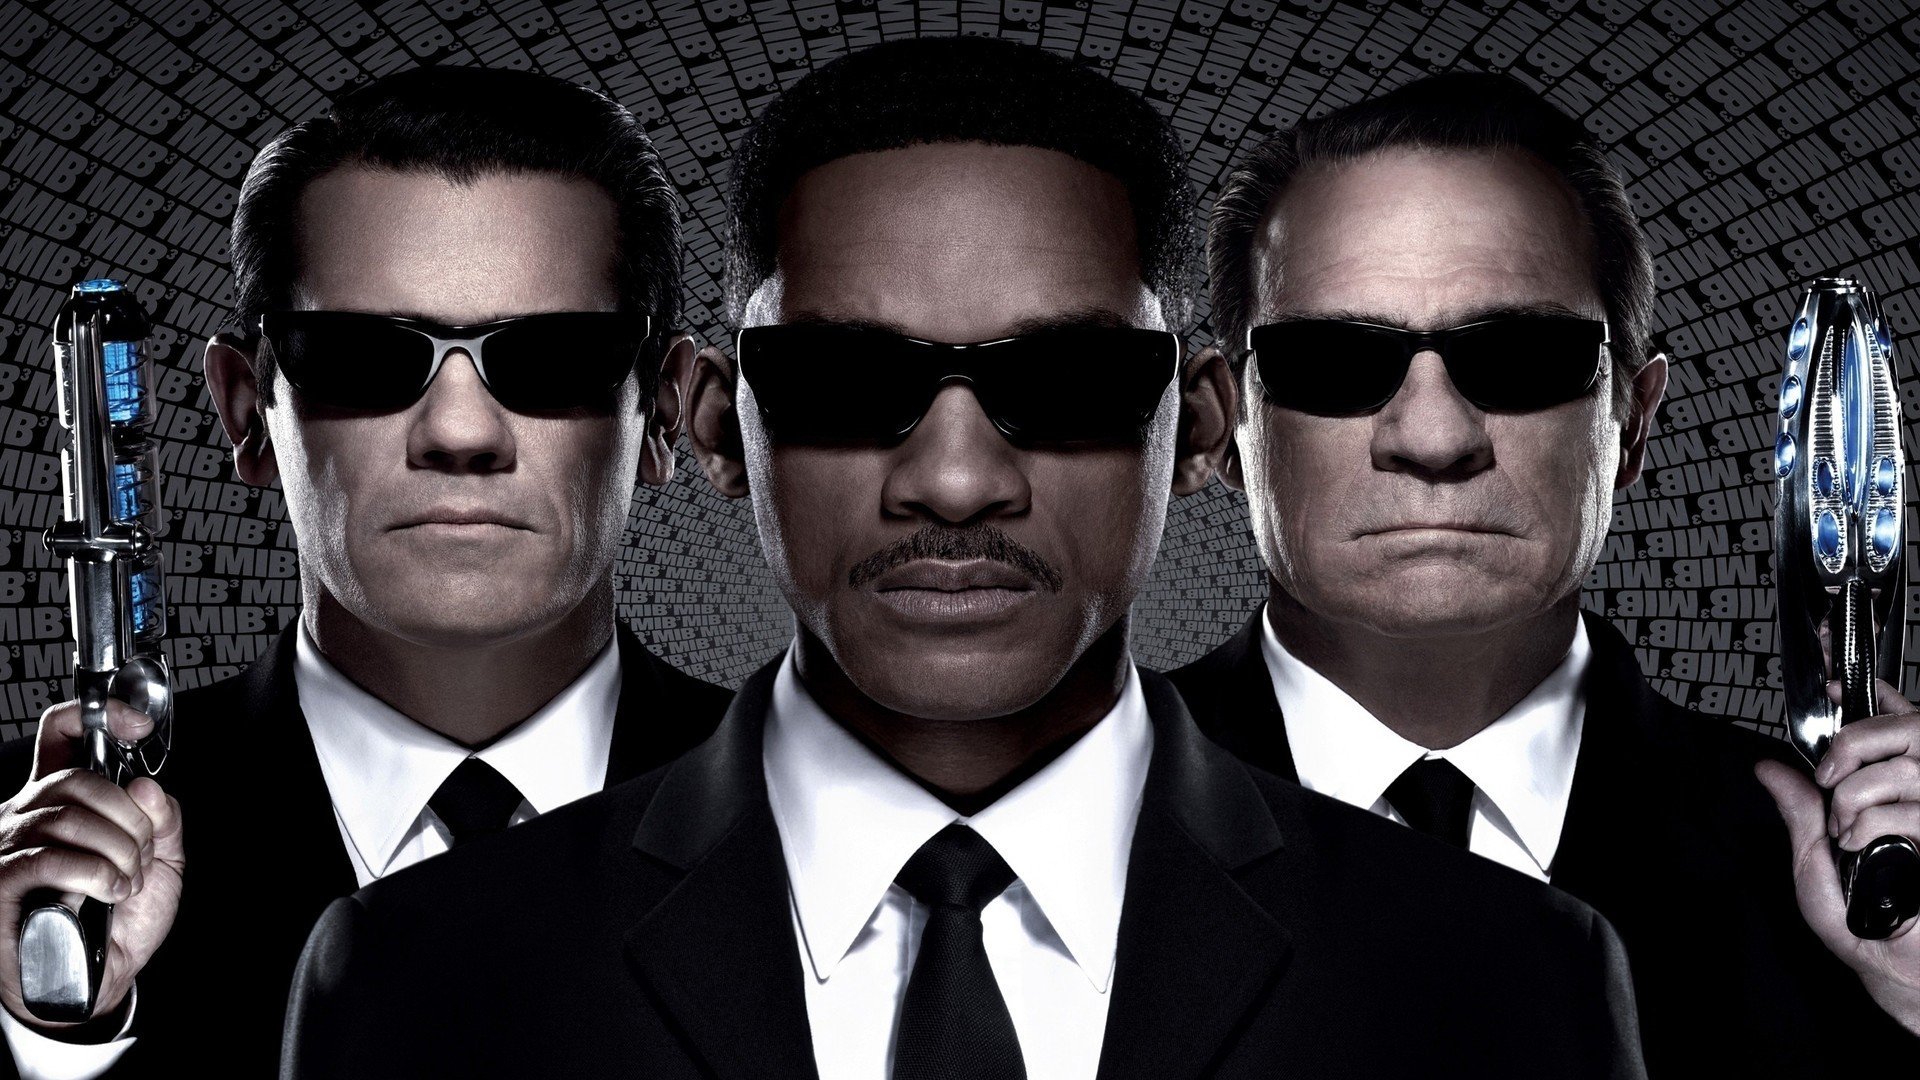 Men In Black 3, Will Smith, Josh Brolin, Suits, Sunglasses Wallpaper